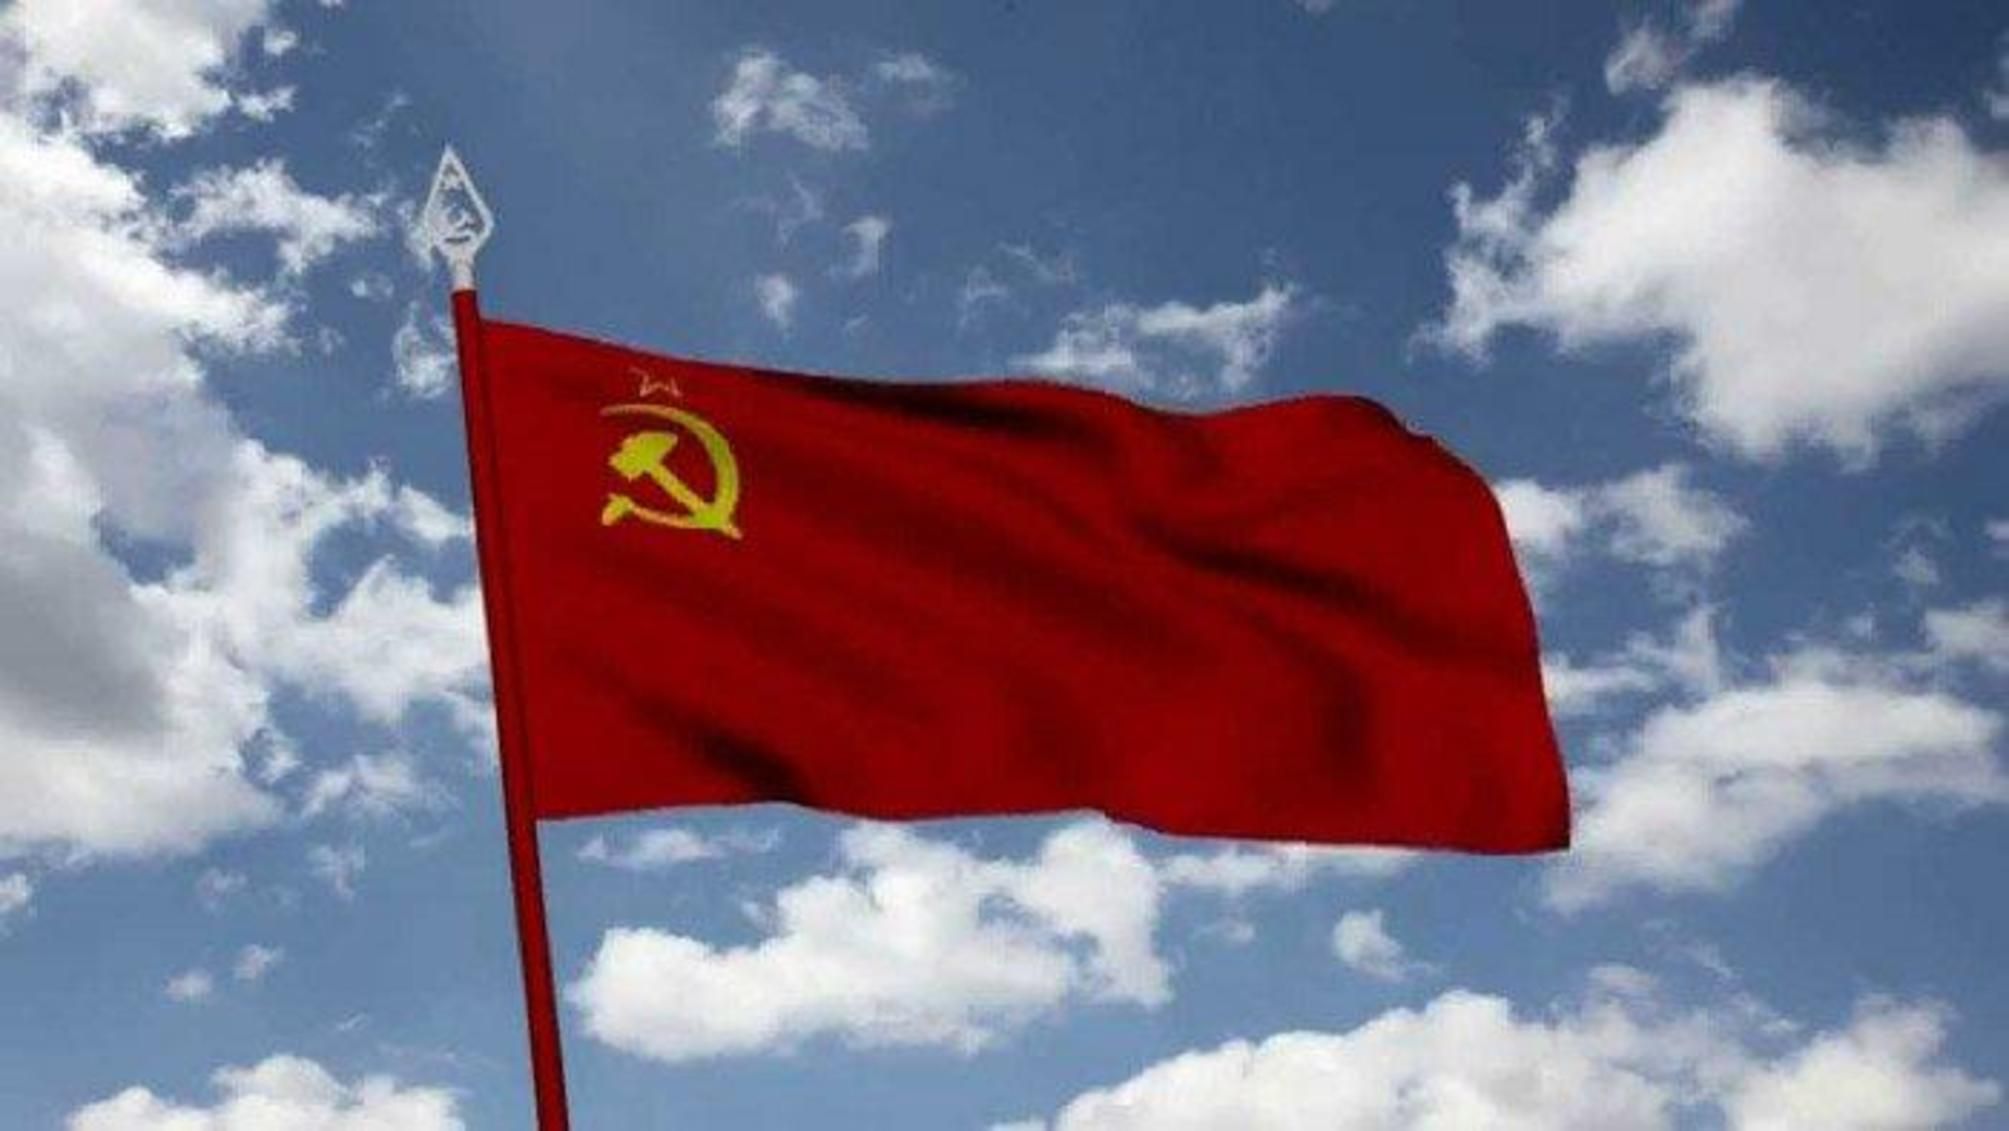  В Одесской области мужчина вывесил советский флаг 1 мая 2020